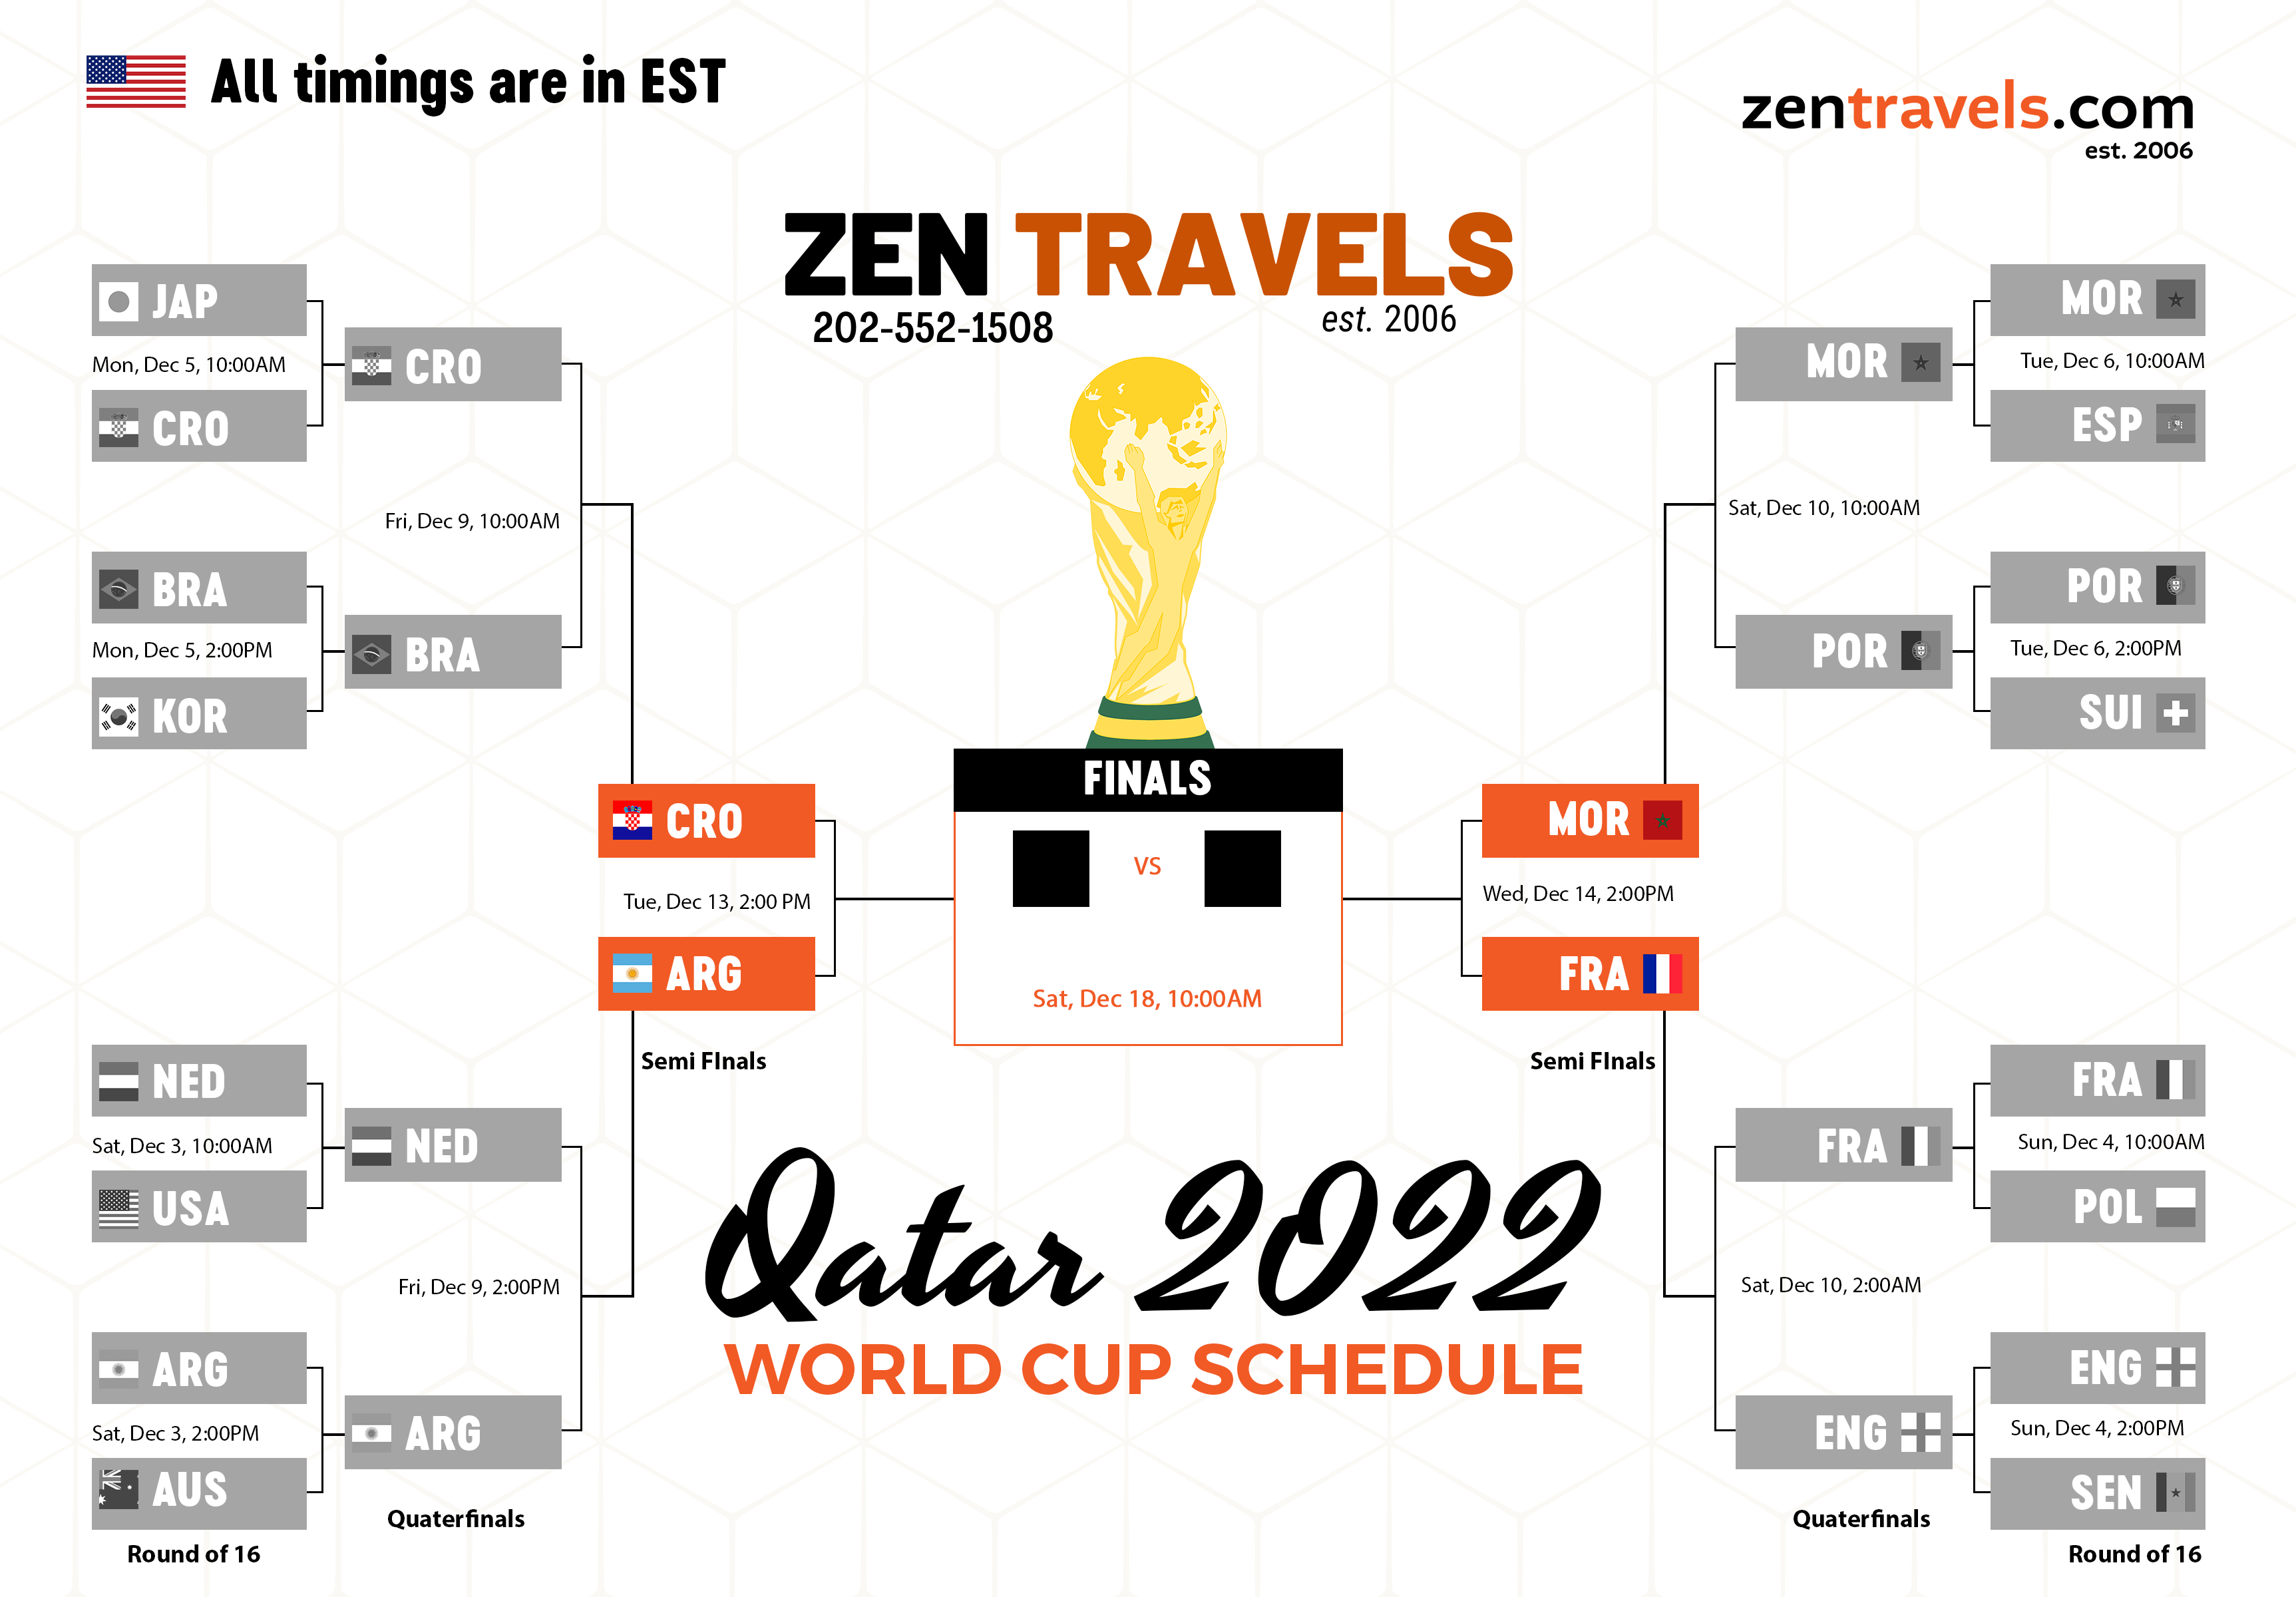 Link to Zen Travels Semi Finals Image